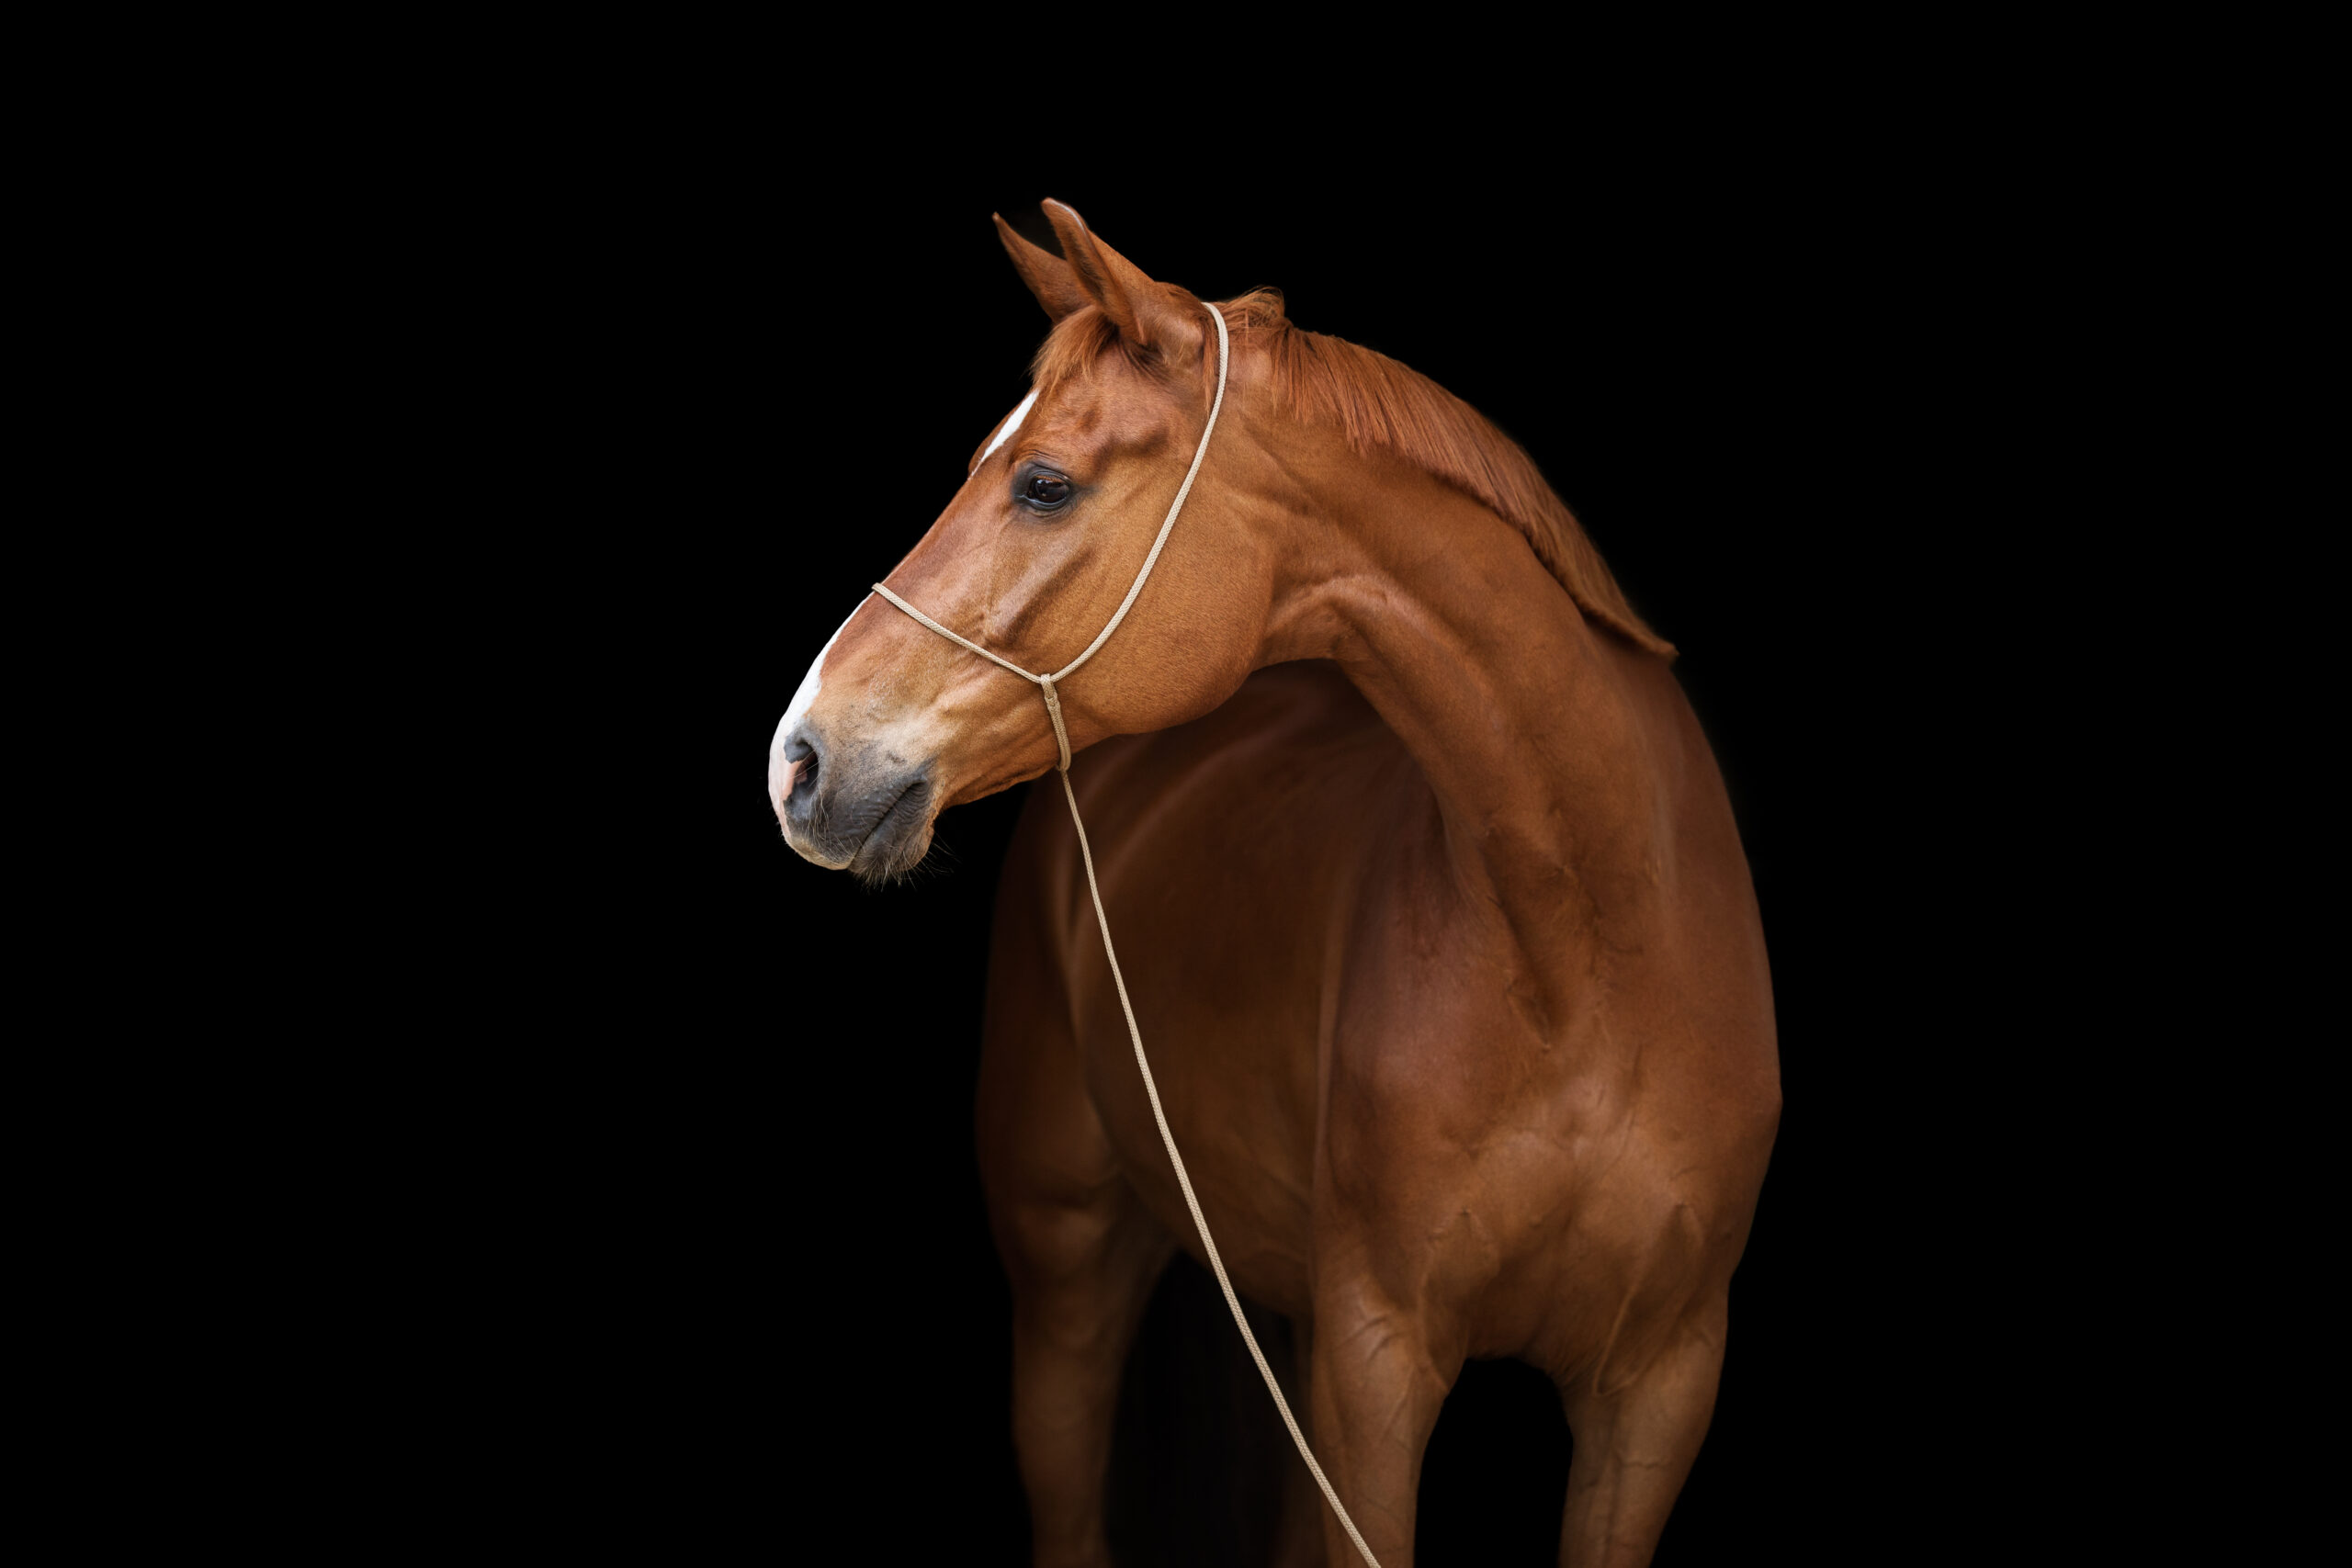 Fuchsfarbenes Pferd / Warmblut mit dem Fotografenhalfter Vein vor schwarzem Hintergrund. Veranschaulichung des Halfters als Produktfoto. Entwickelt von Kim Kärger Photography.